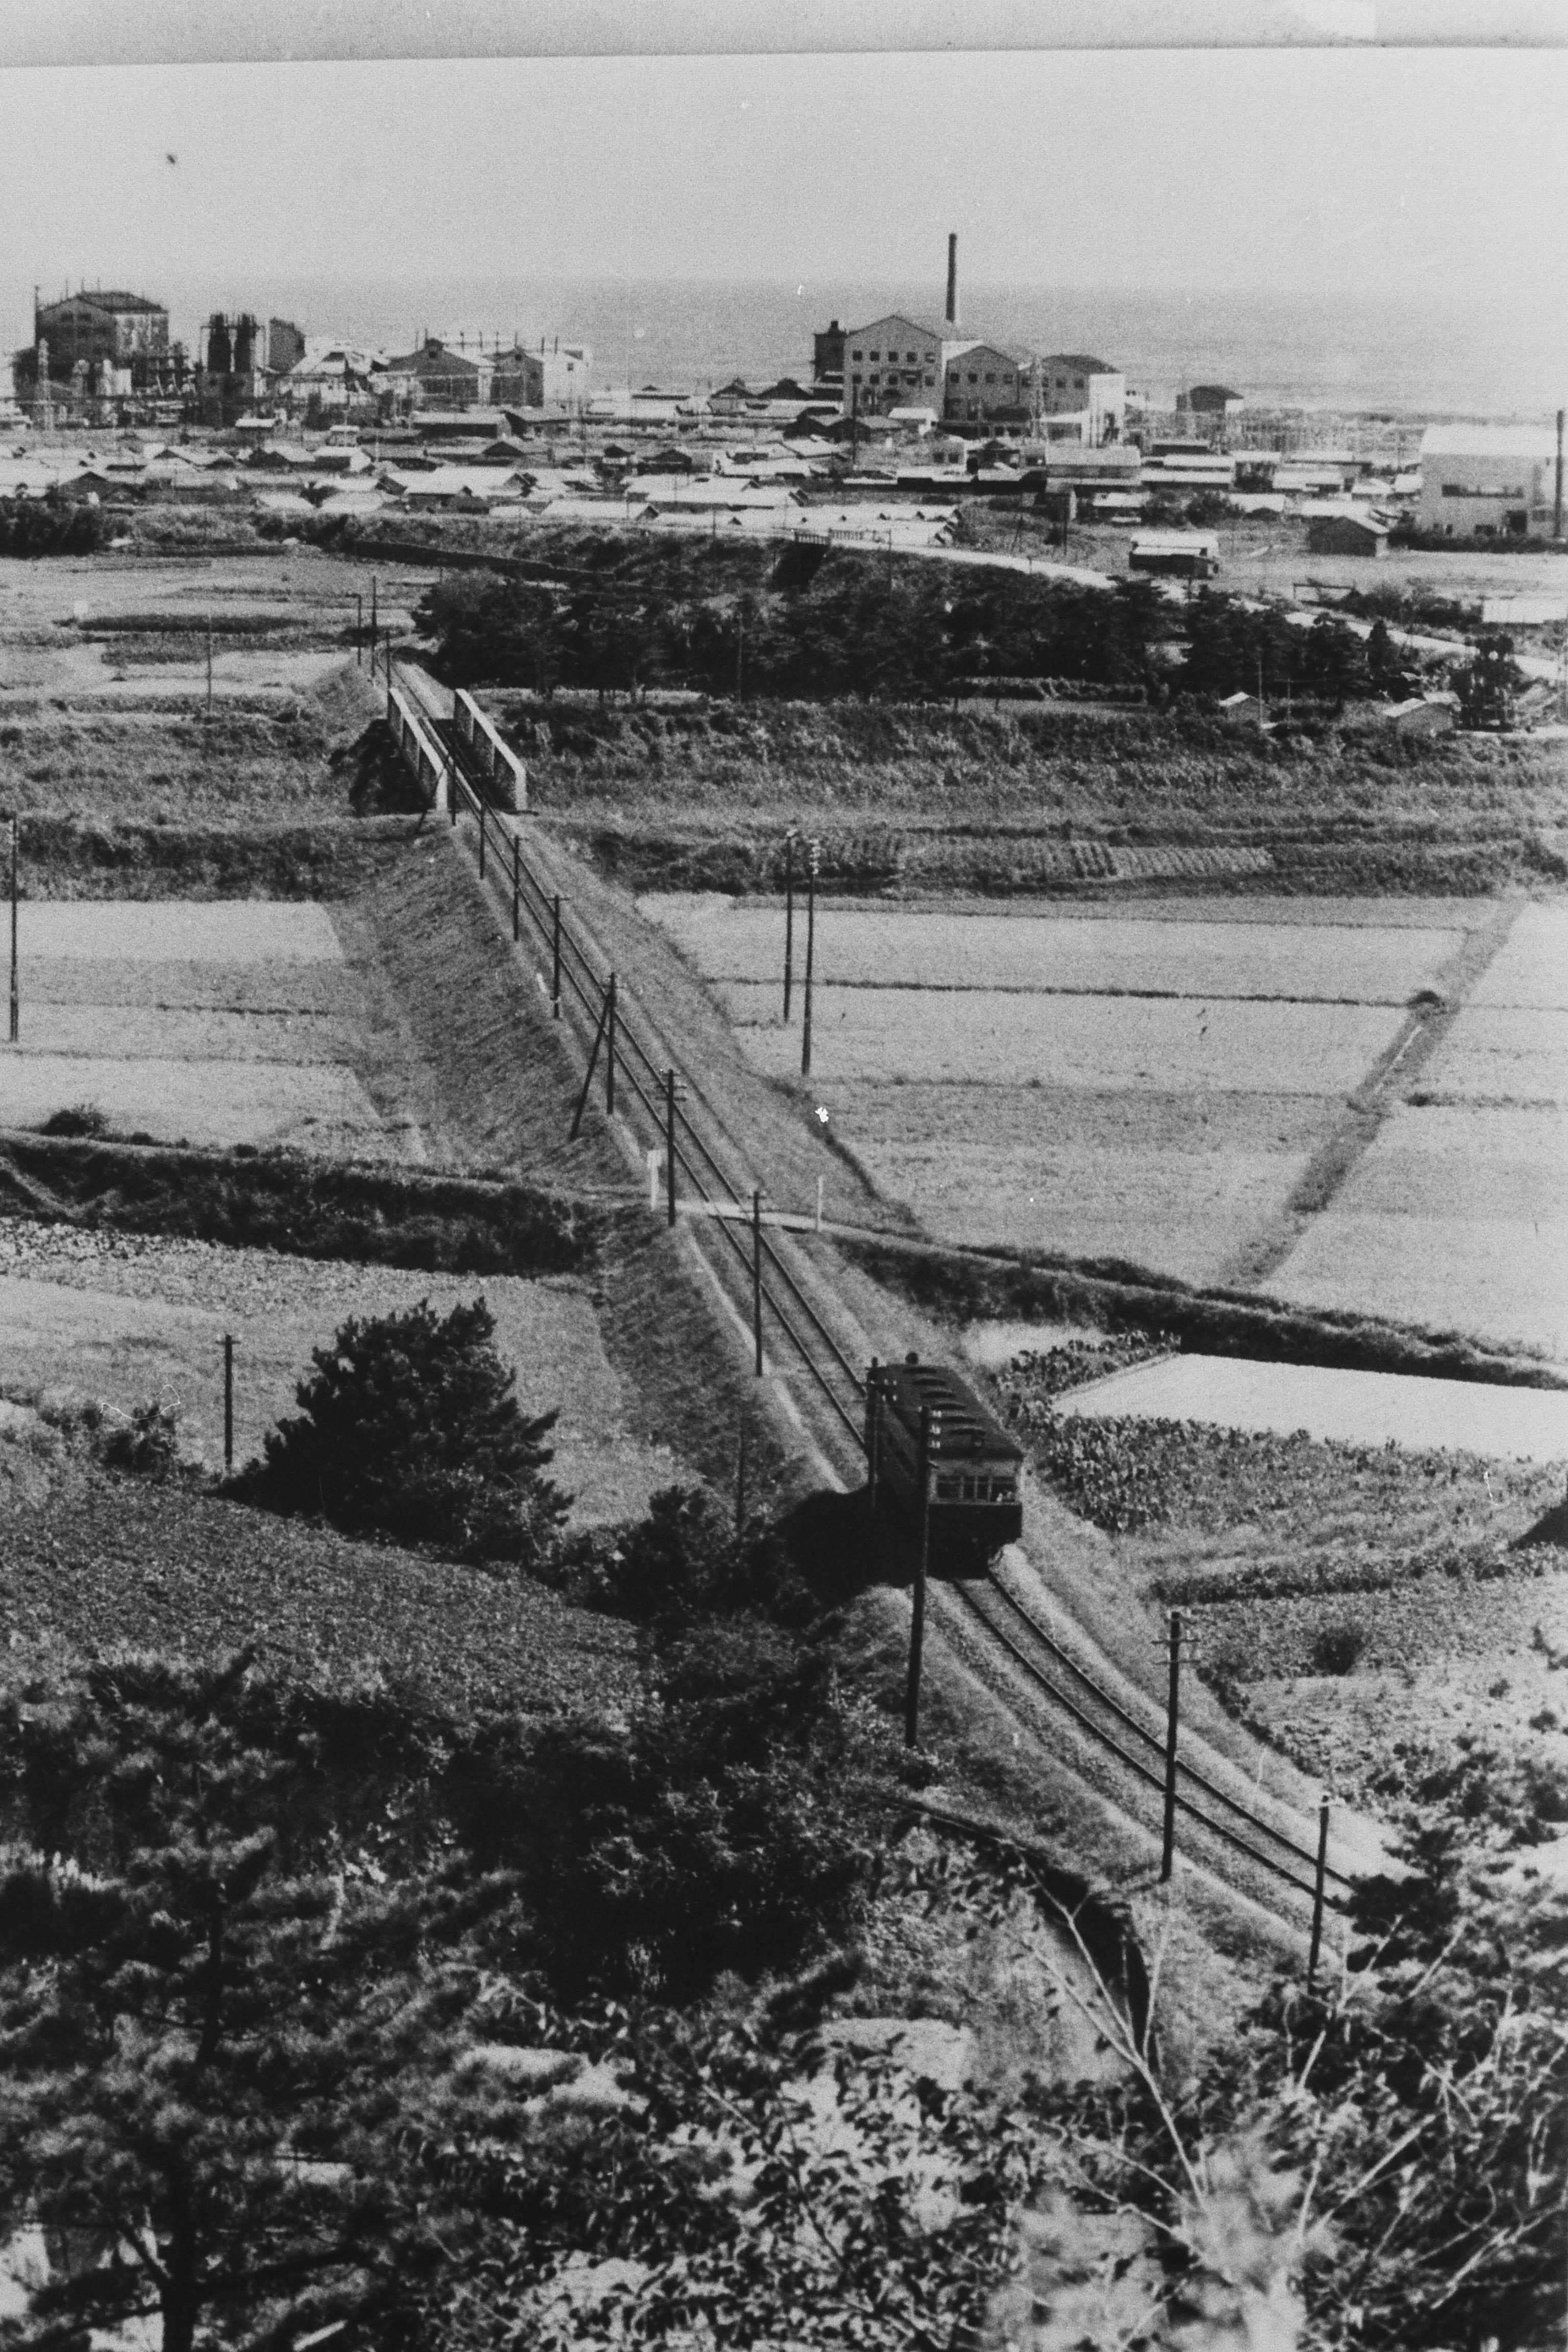 滝尻地内を泉に向かって走る小名浜臨港鉄道の気動車・後に道路との交差部分に滝尻停留所が設けられました(昭和30年代前期、比佐不二夫氏提供)